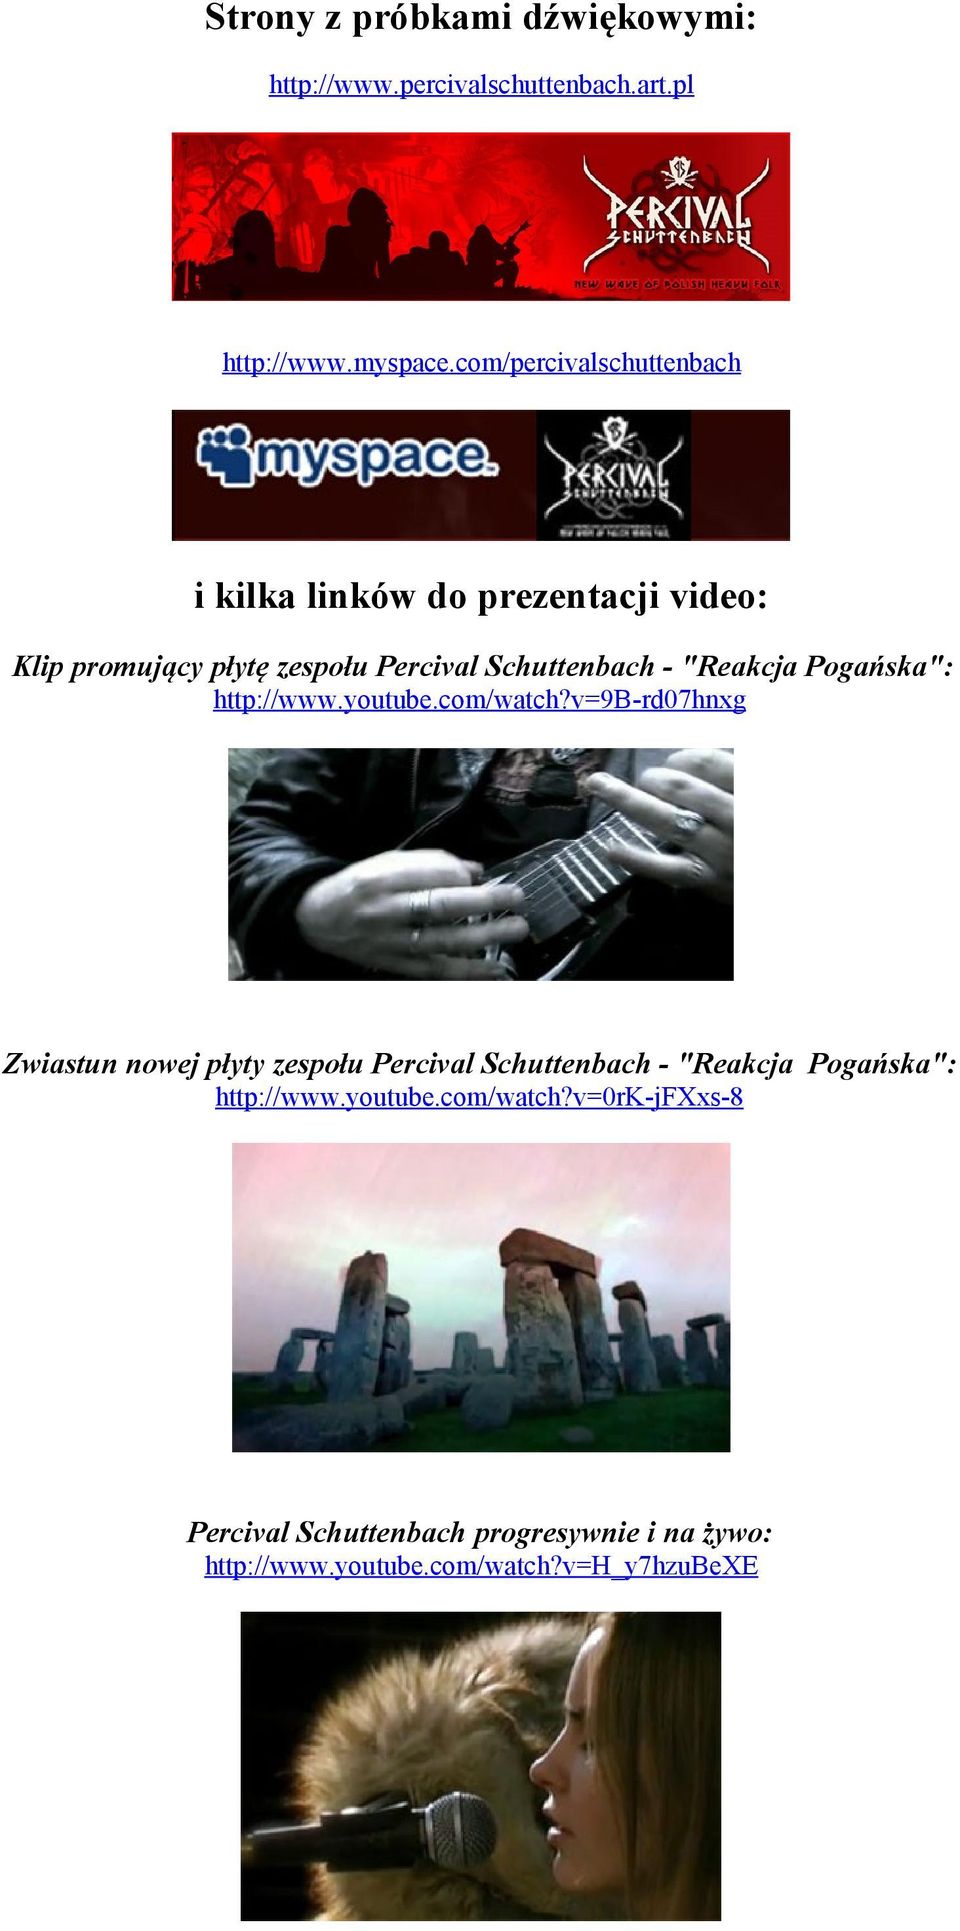 "Reakcja Pogańska": http://www.youtube.com/watch?